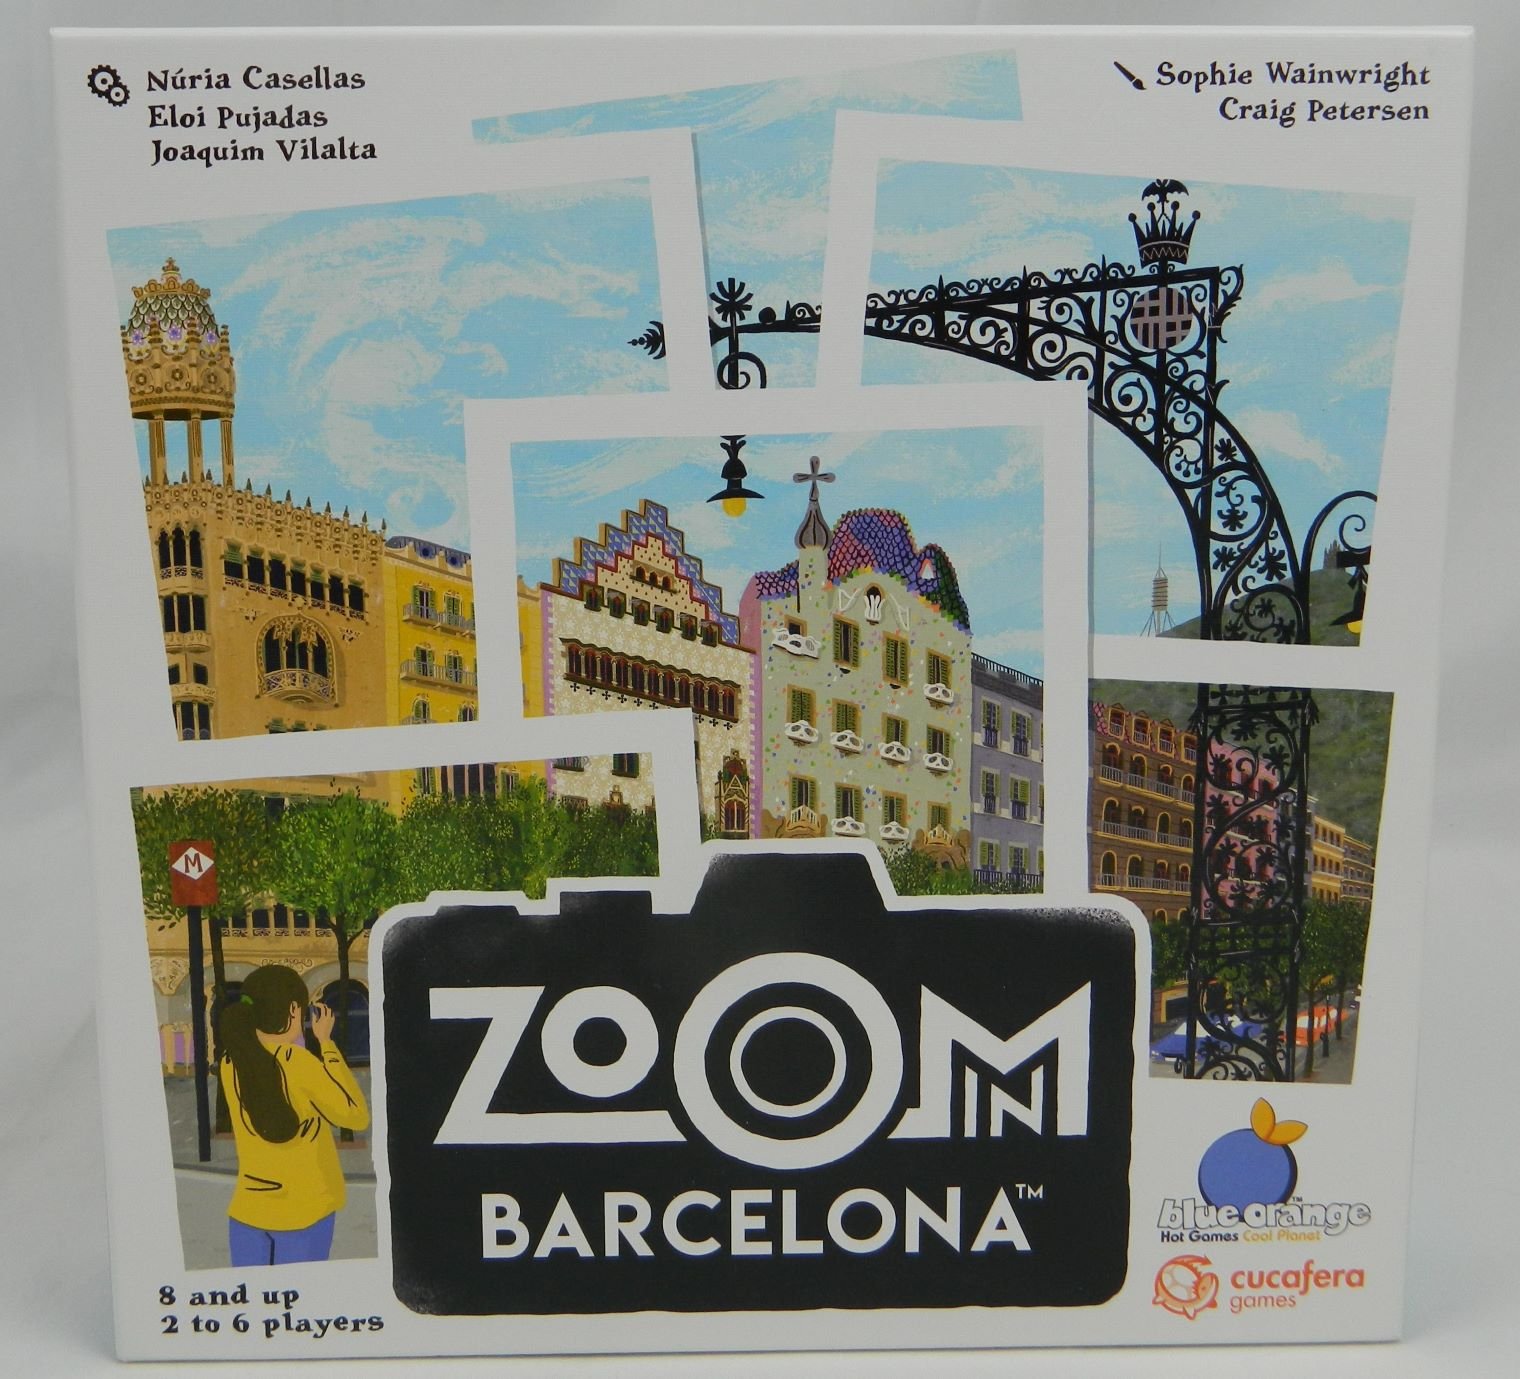 Box for Zoom in Barcelona